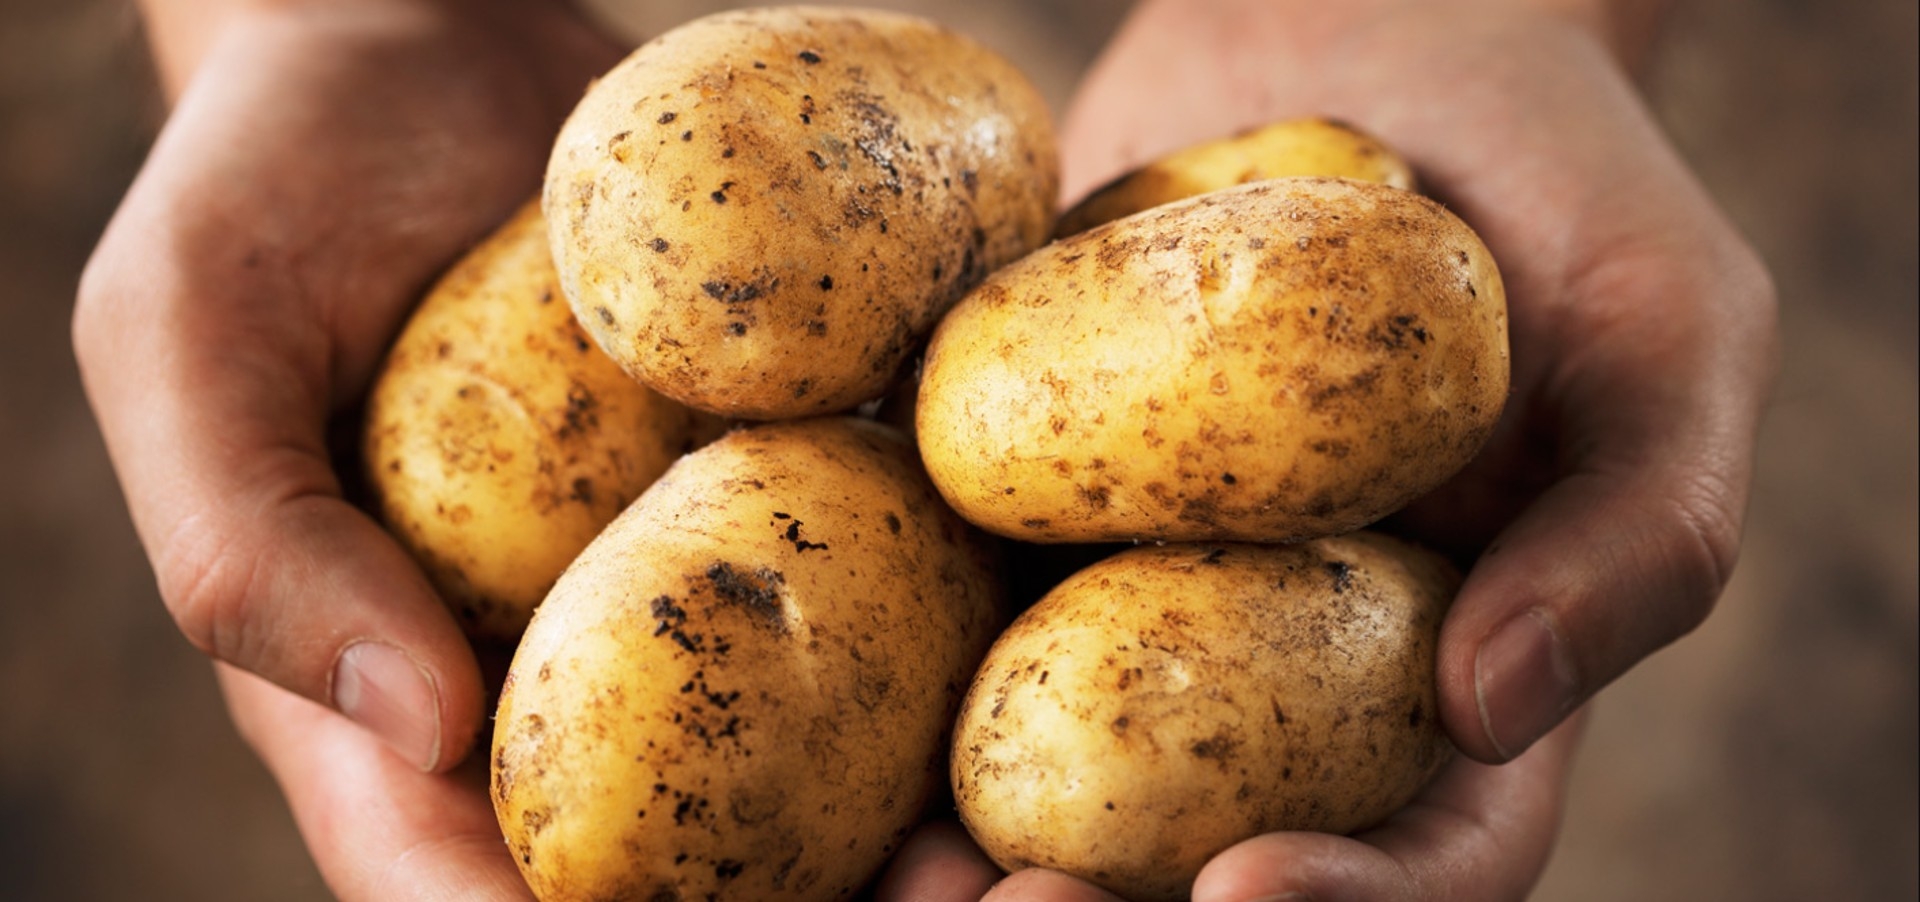 Kartoffeln im hand